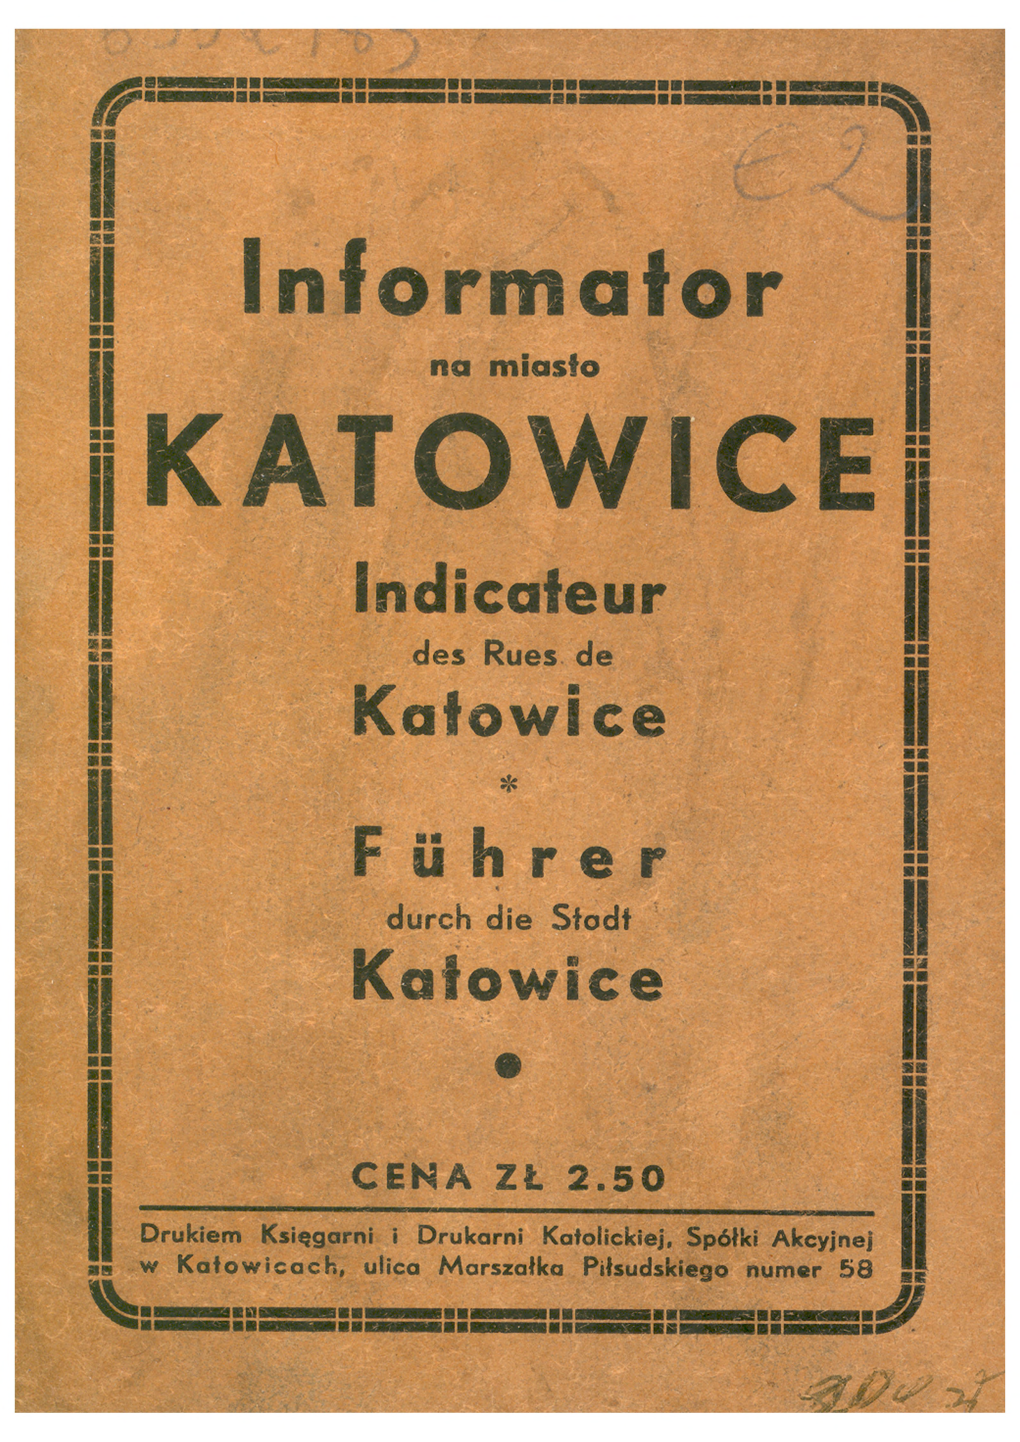 KATOWICE I Indicałeur |J || Des Rues De 5S 1! Katowice |J 55 ' ■■■*